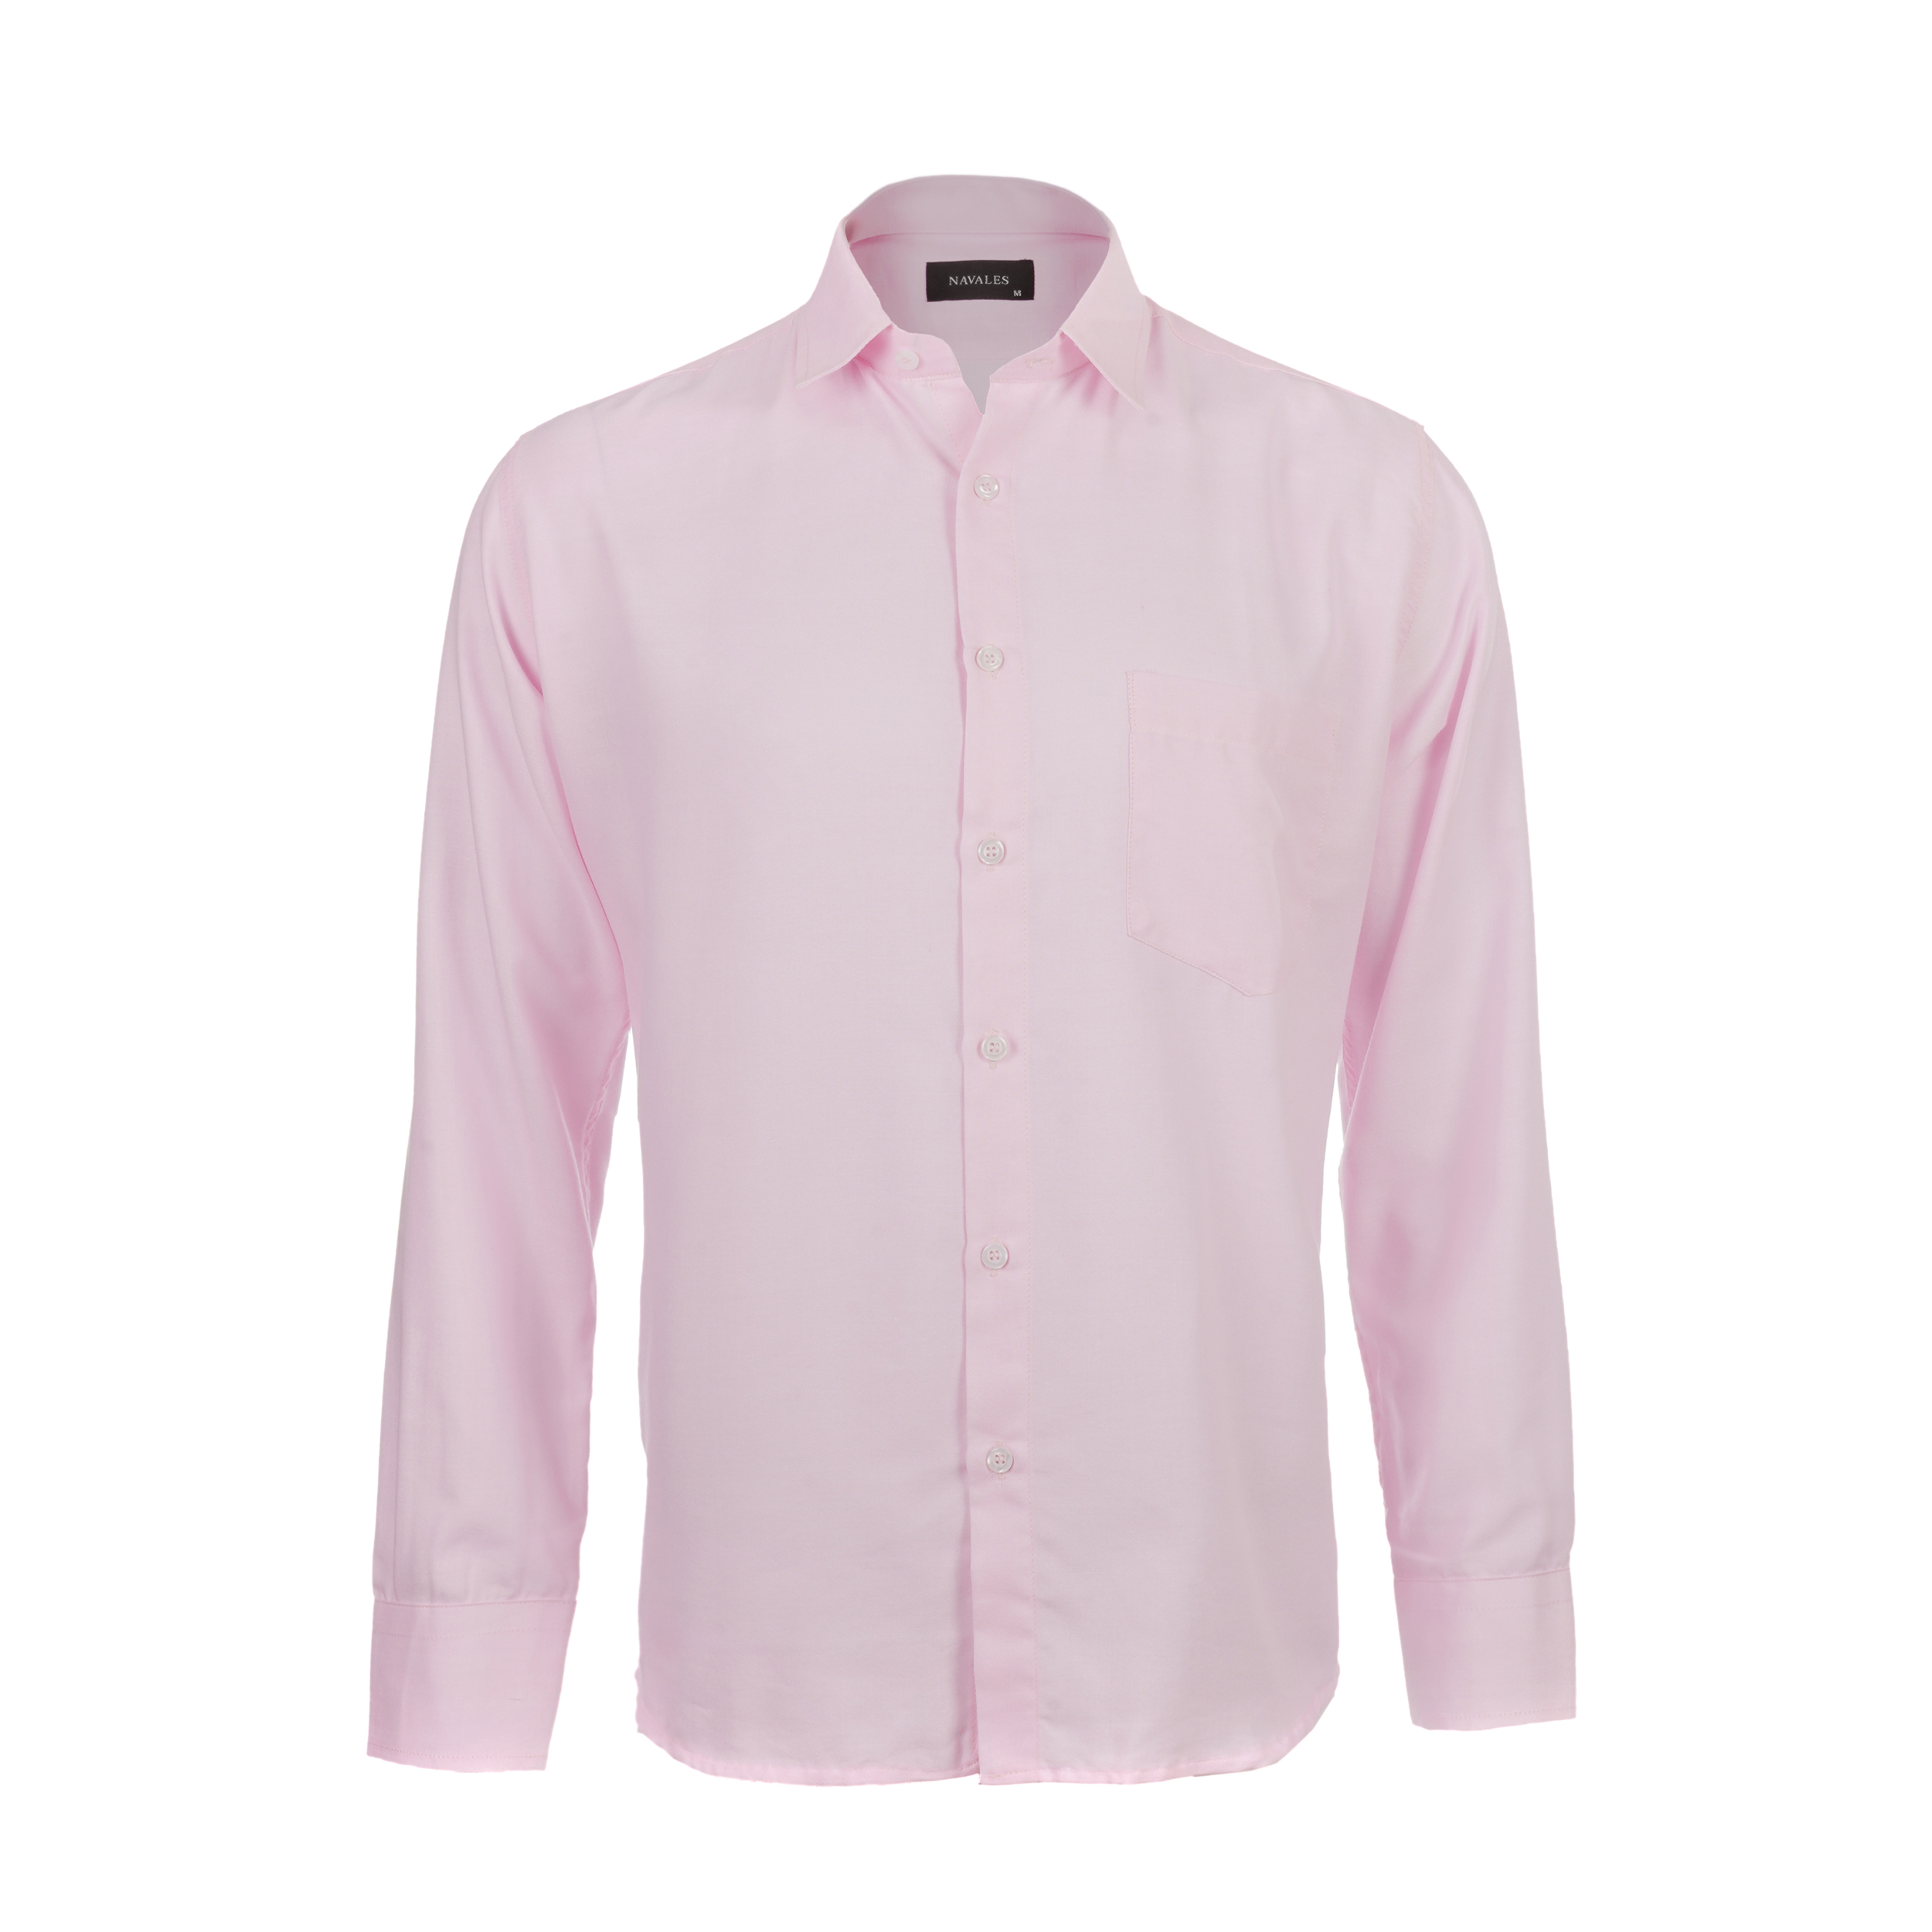 نکته خرید - قیمت روز پیراهن آستین بلند مردانه ناوالس مدل PK3-8020-PK خرید